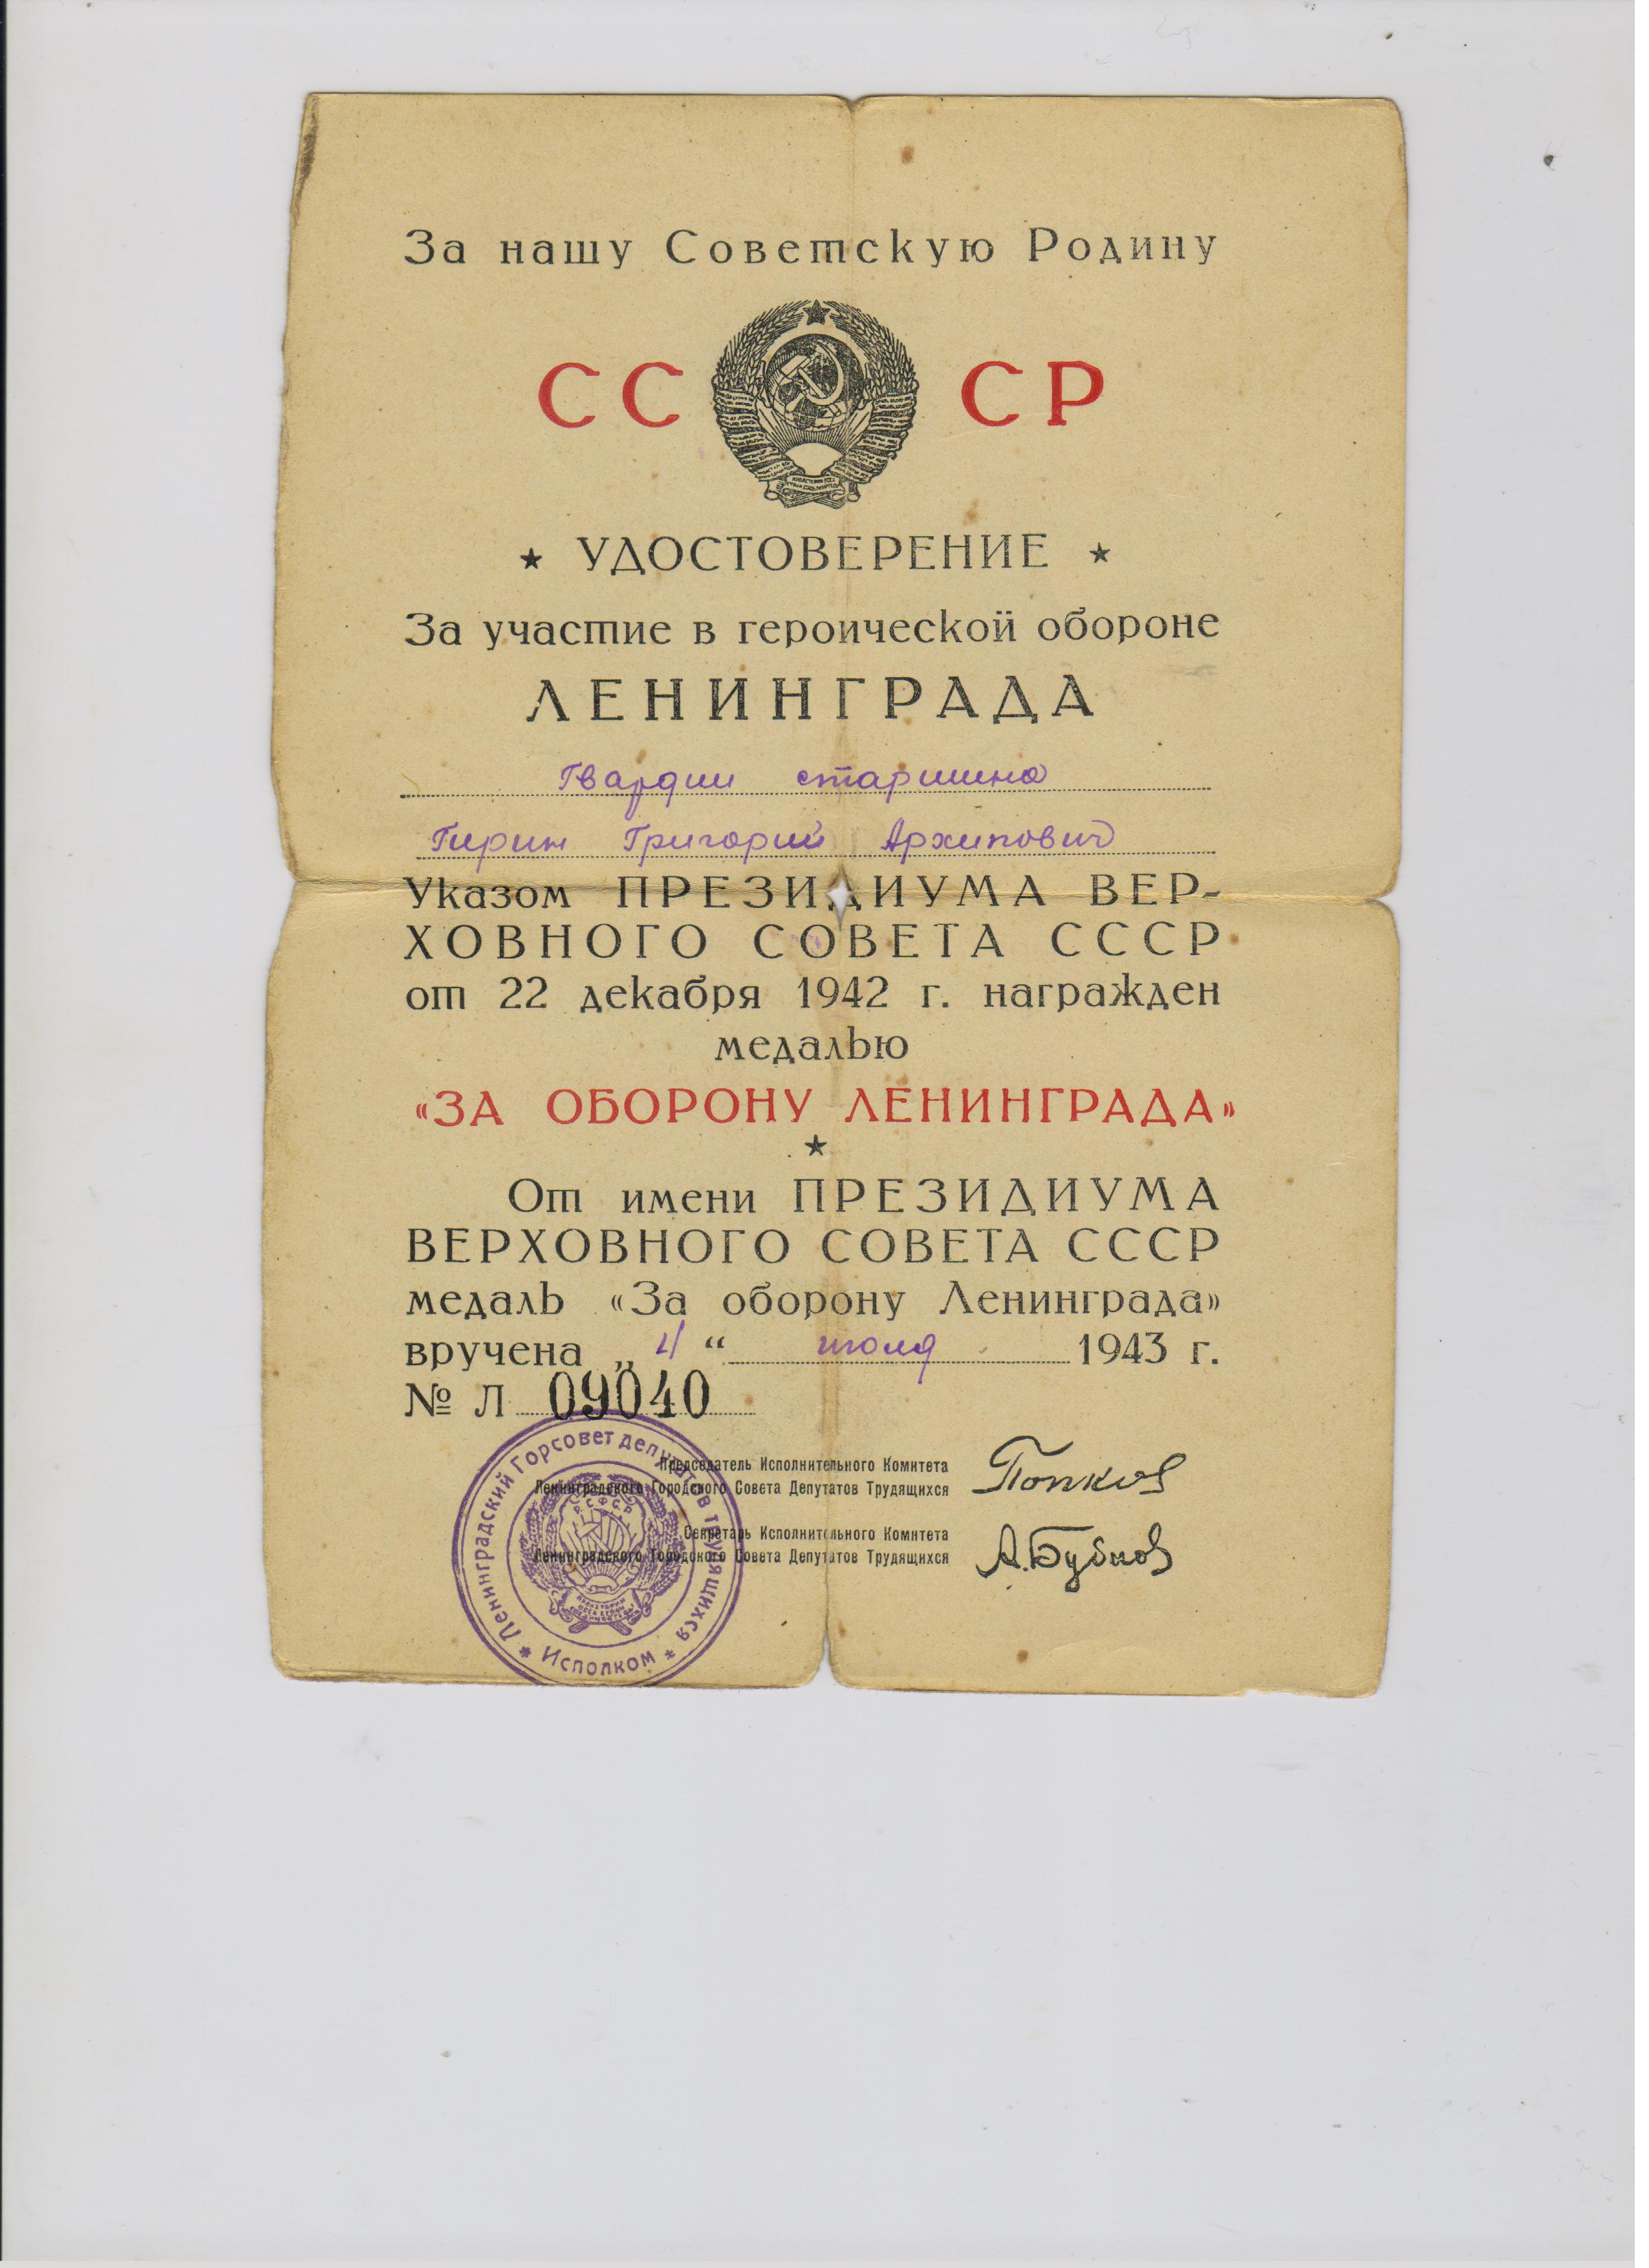 Удостоверение Гирина Г.А. Документ предоставлен Горюновой Е.